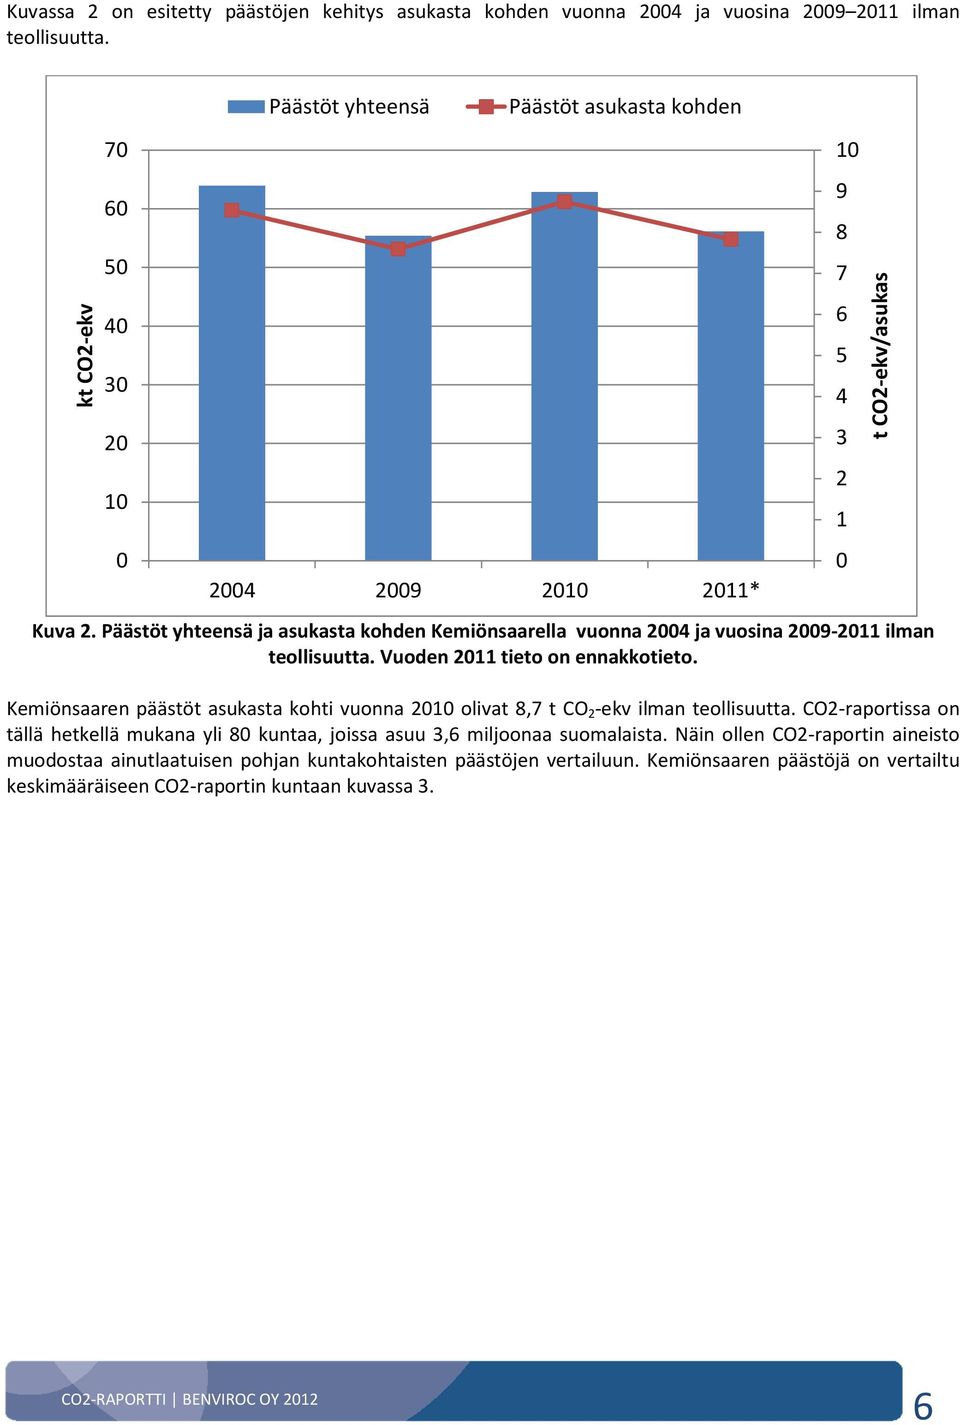 Päästöt yhteensä ja asukasta kohden Kemiönsaarella vuonna 2004 ja vuosina 2009-2011 ilman teollisuutta. Vuoden 2011 tieto on ennakkotieto.